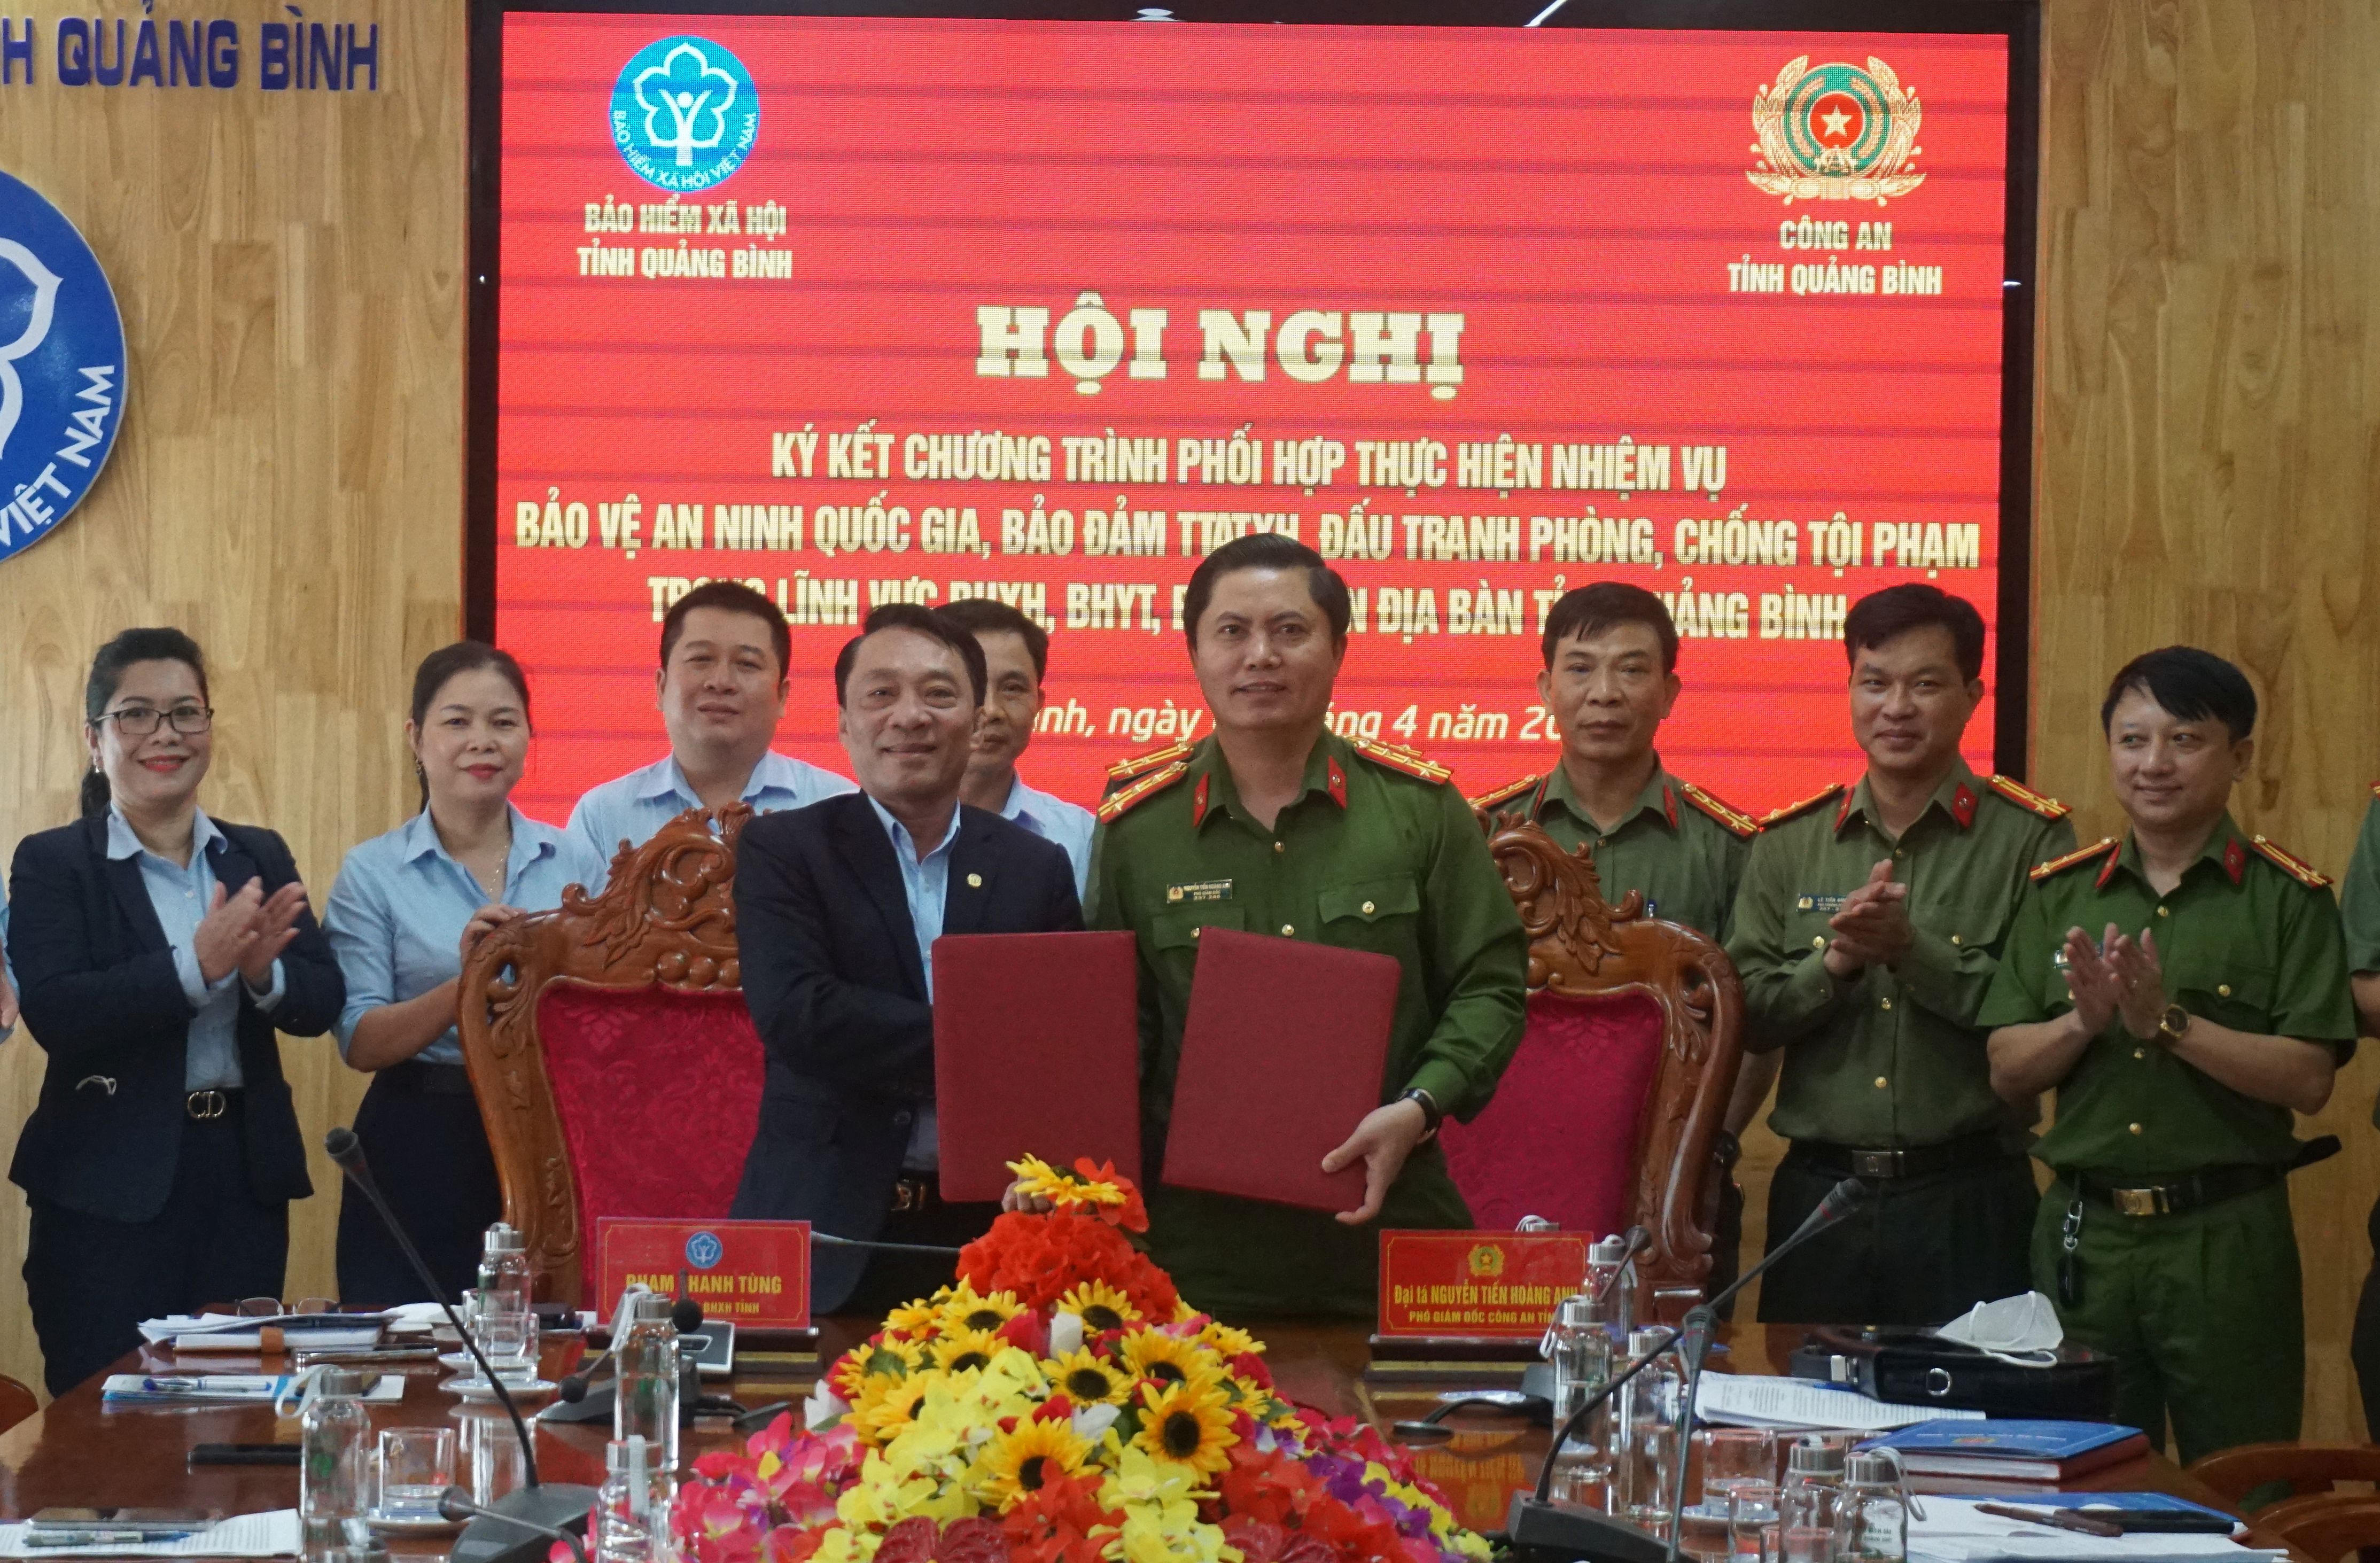 Lãnh đạo Công an tỉnh và BHXH tỉnh Quảng Bình ký kết quy chế phối hợp 